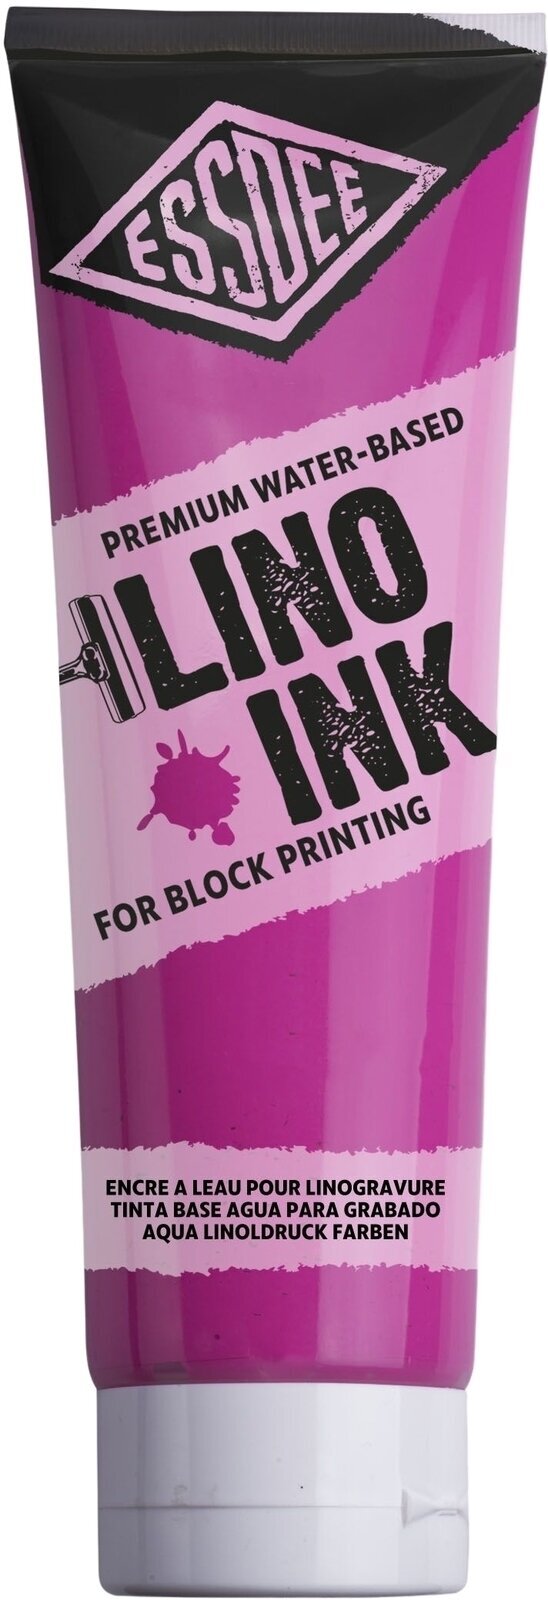 Boja za linorez Essdee Block Printing Ink Boja za linorez Fluorescent Pink 300 ml